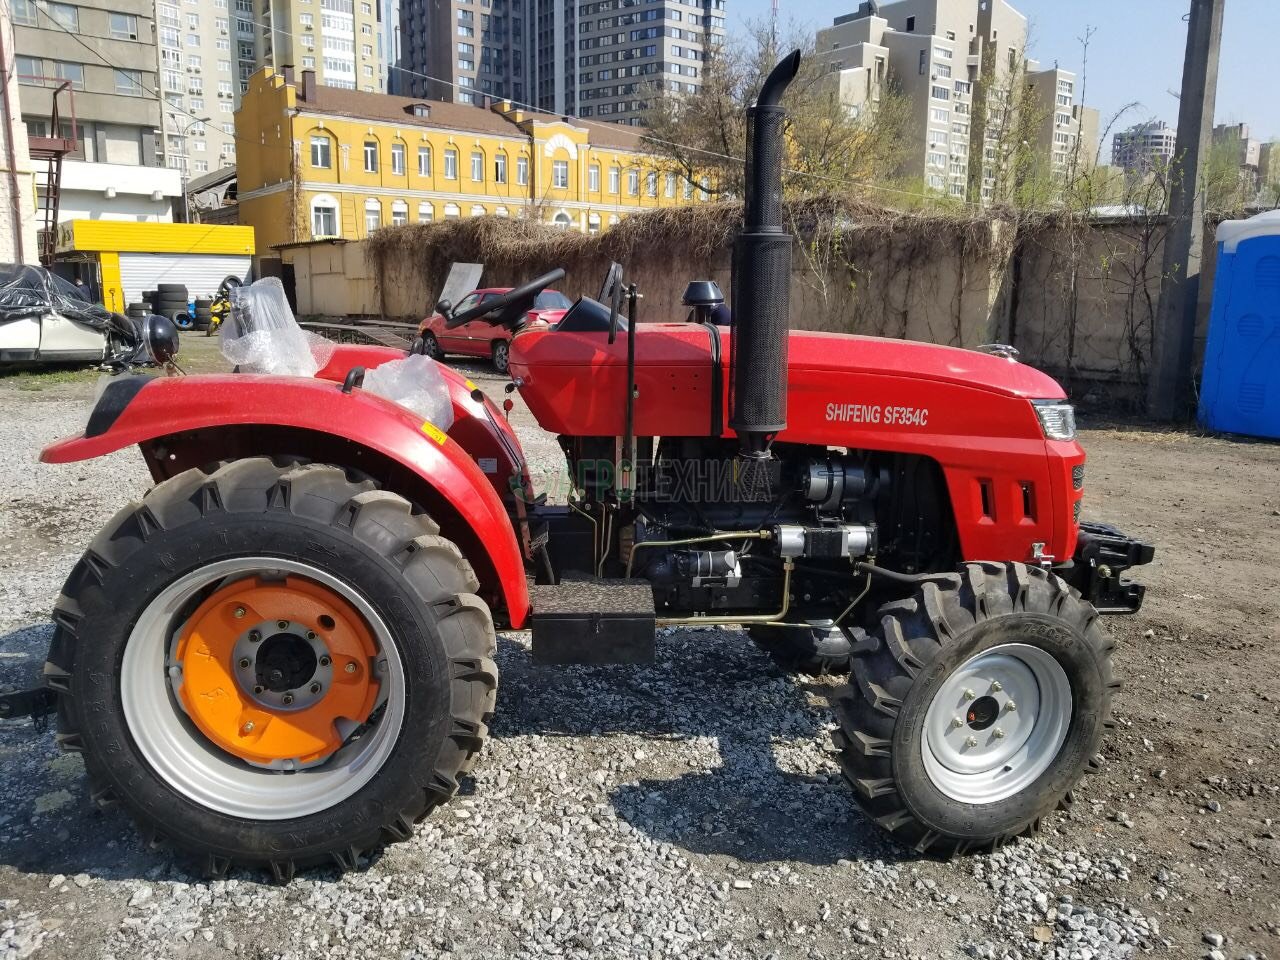 Как выгодно и безопасно купить трактор «Шифенг 354» в Украине